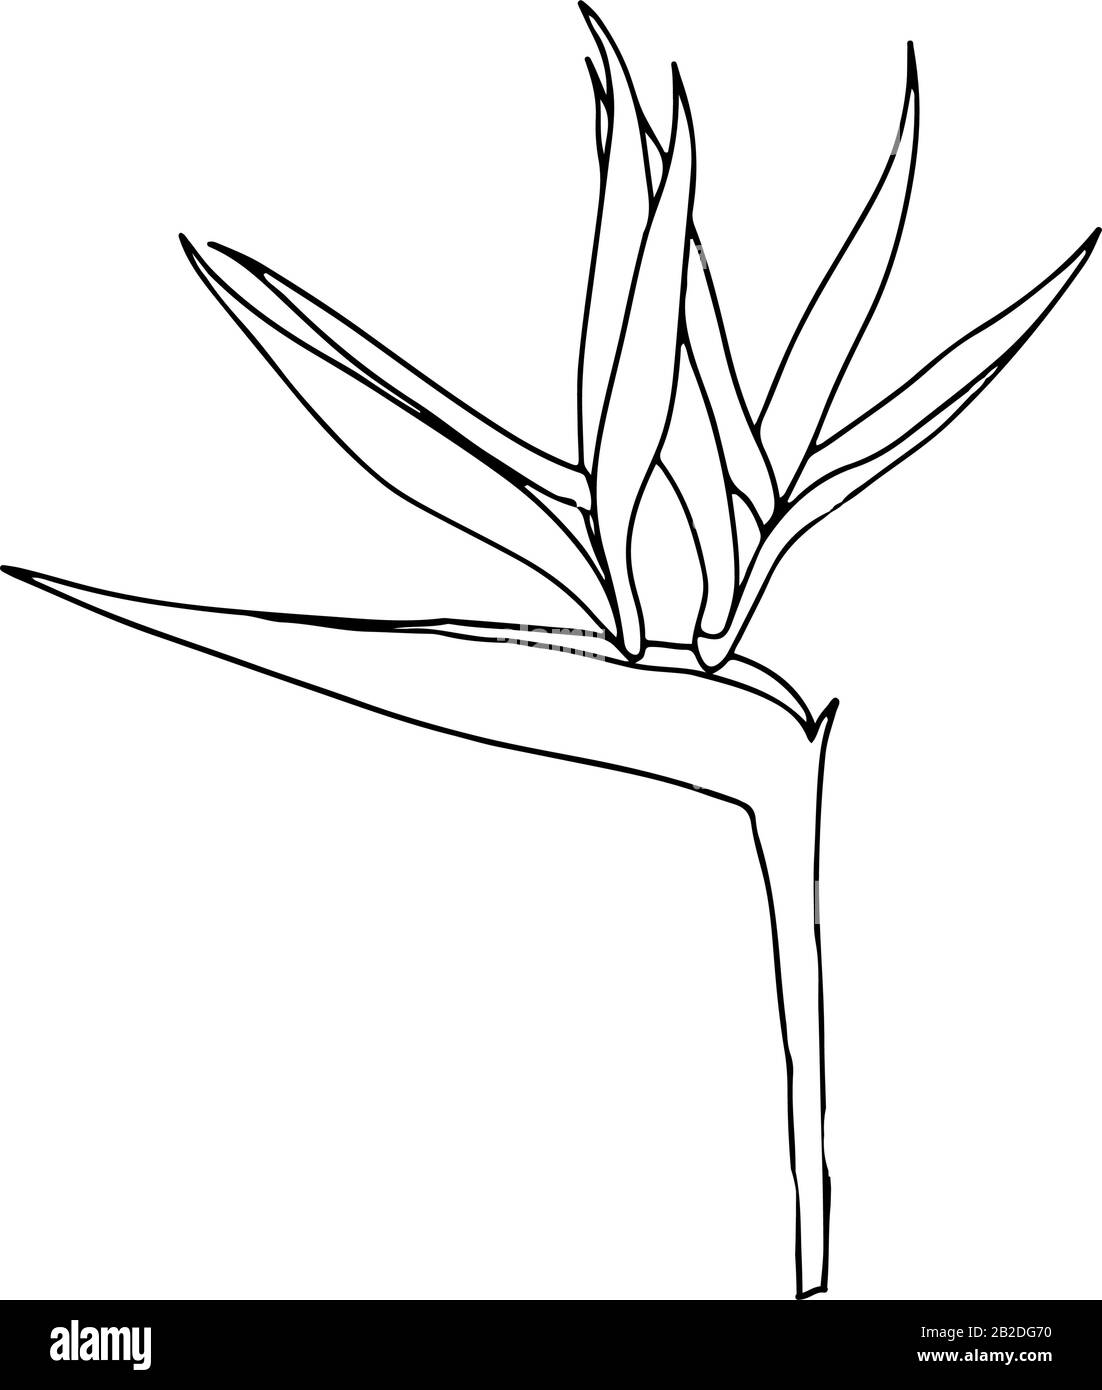 Strelitzia reginae tropicale sud africa fiore isolato su sfondo bianco. Vector stock illustration.Outline tattoo print,logo.bird of Paradise. Illustrazione Vettoriale